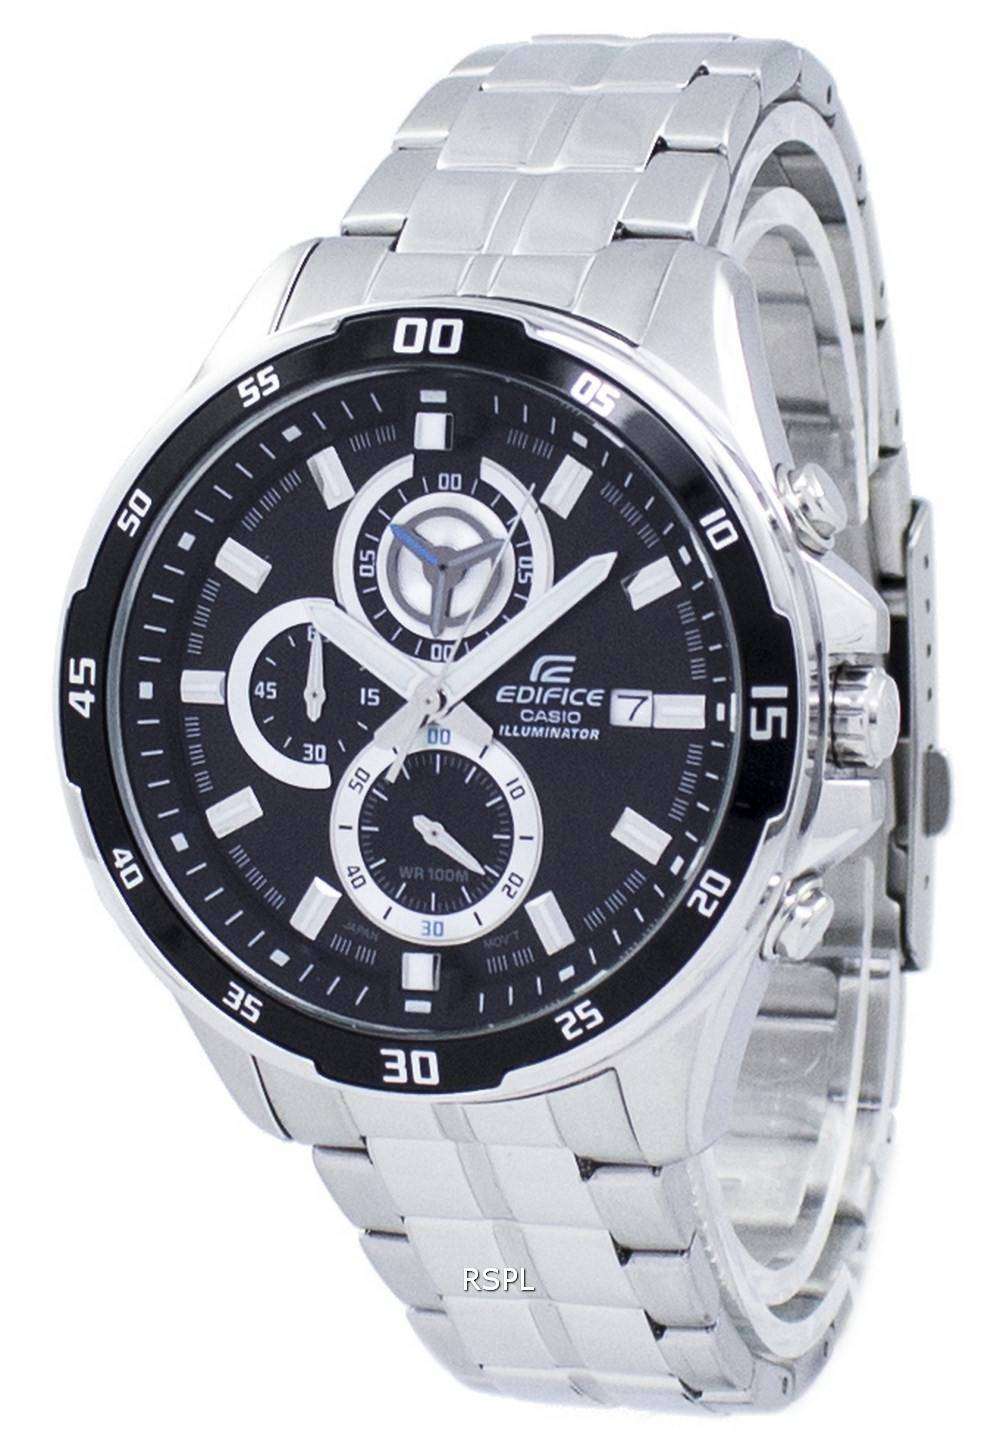 Casio Edifice Illuminator Chronograph Quartz EFR-547D-1AV EFR547D-1AV Men's Watch